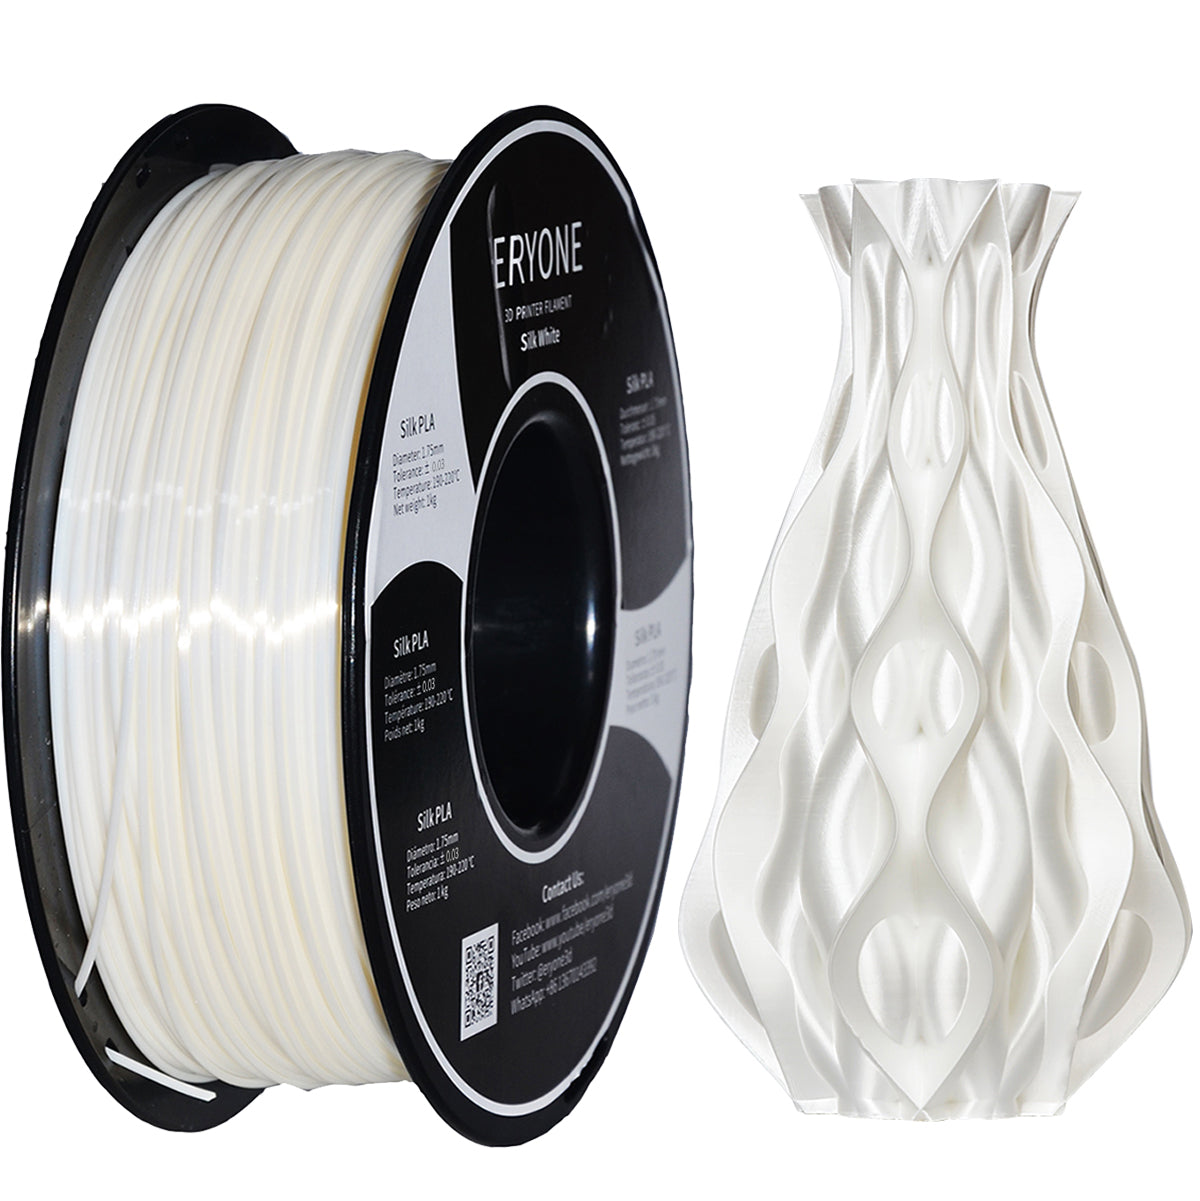 ERYONE Silk PLA Filament 1.75mm, Material de impresión 3D brillante y sedoso para impresoras 3D y bolígrafos 3D, 1kg 1 carrete, 1.75mm